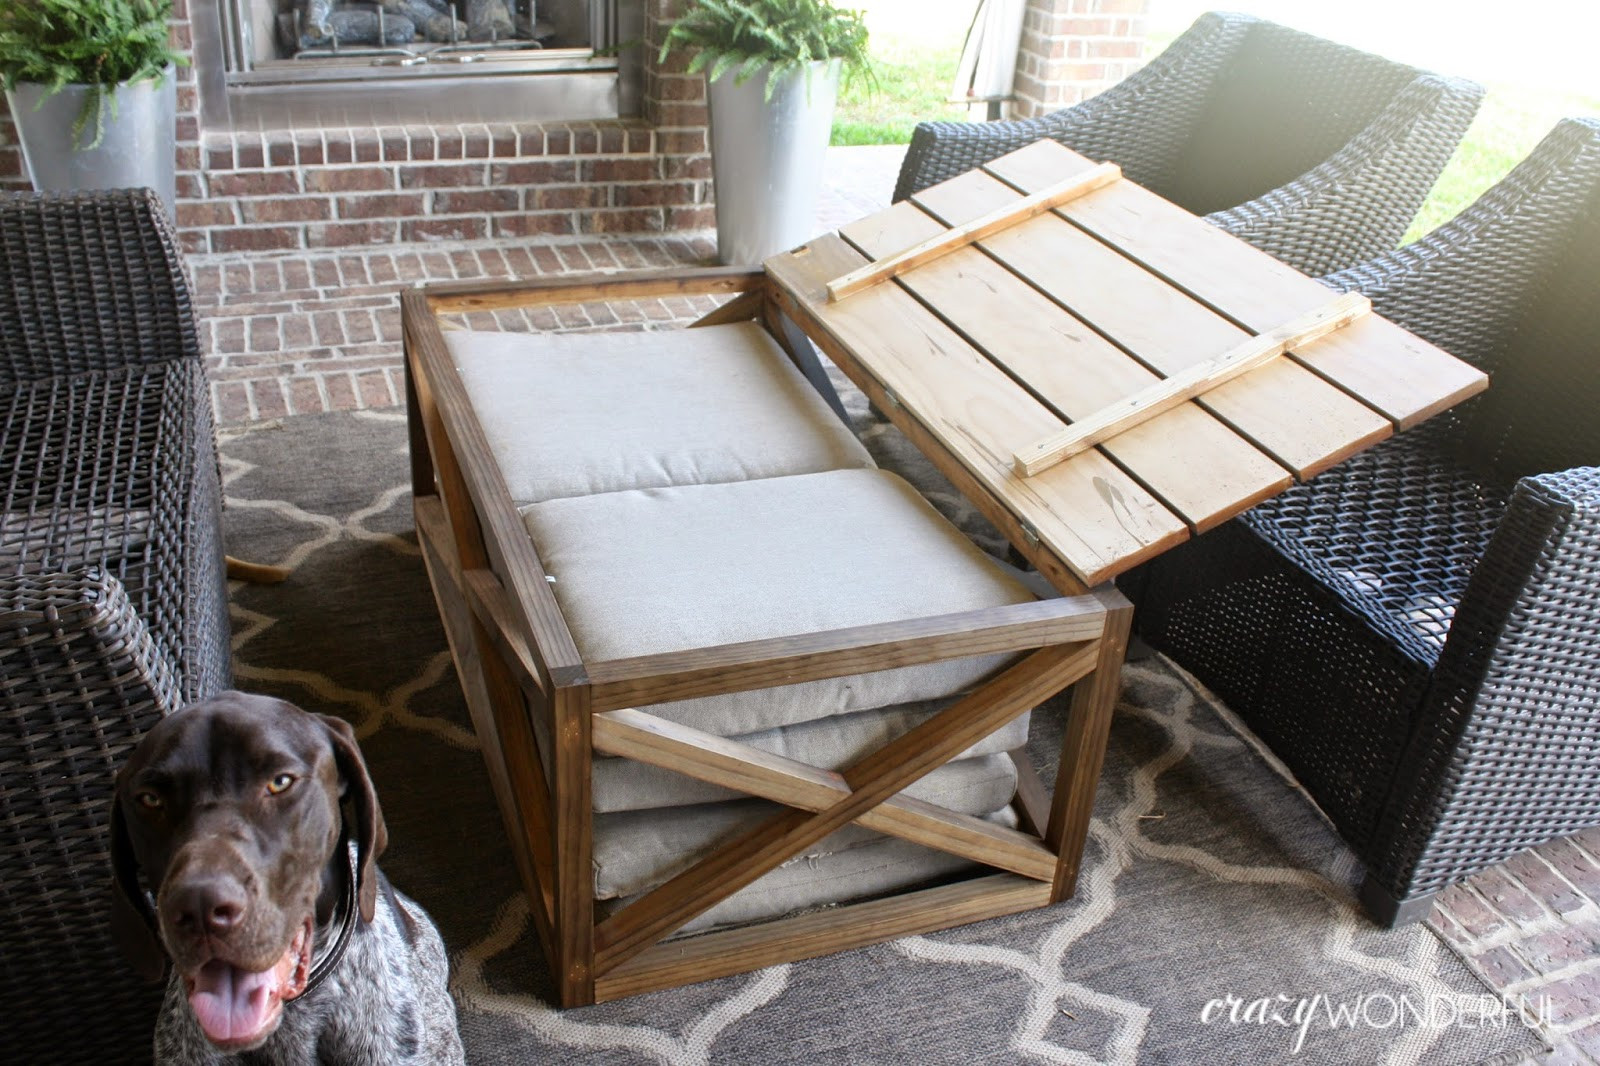 DIY Outdoor Coffee Table
 DIY outdoor coffee table